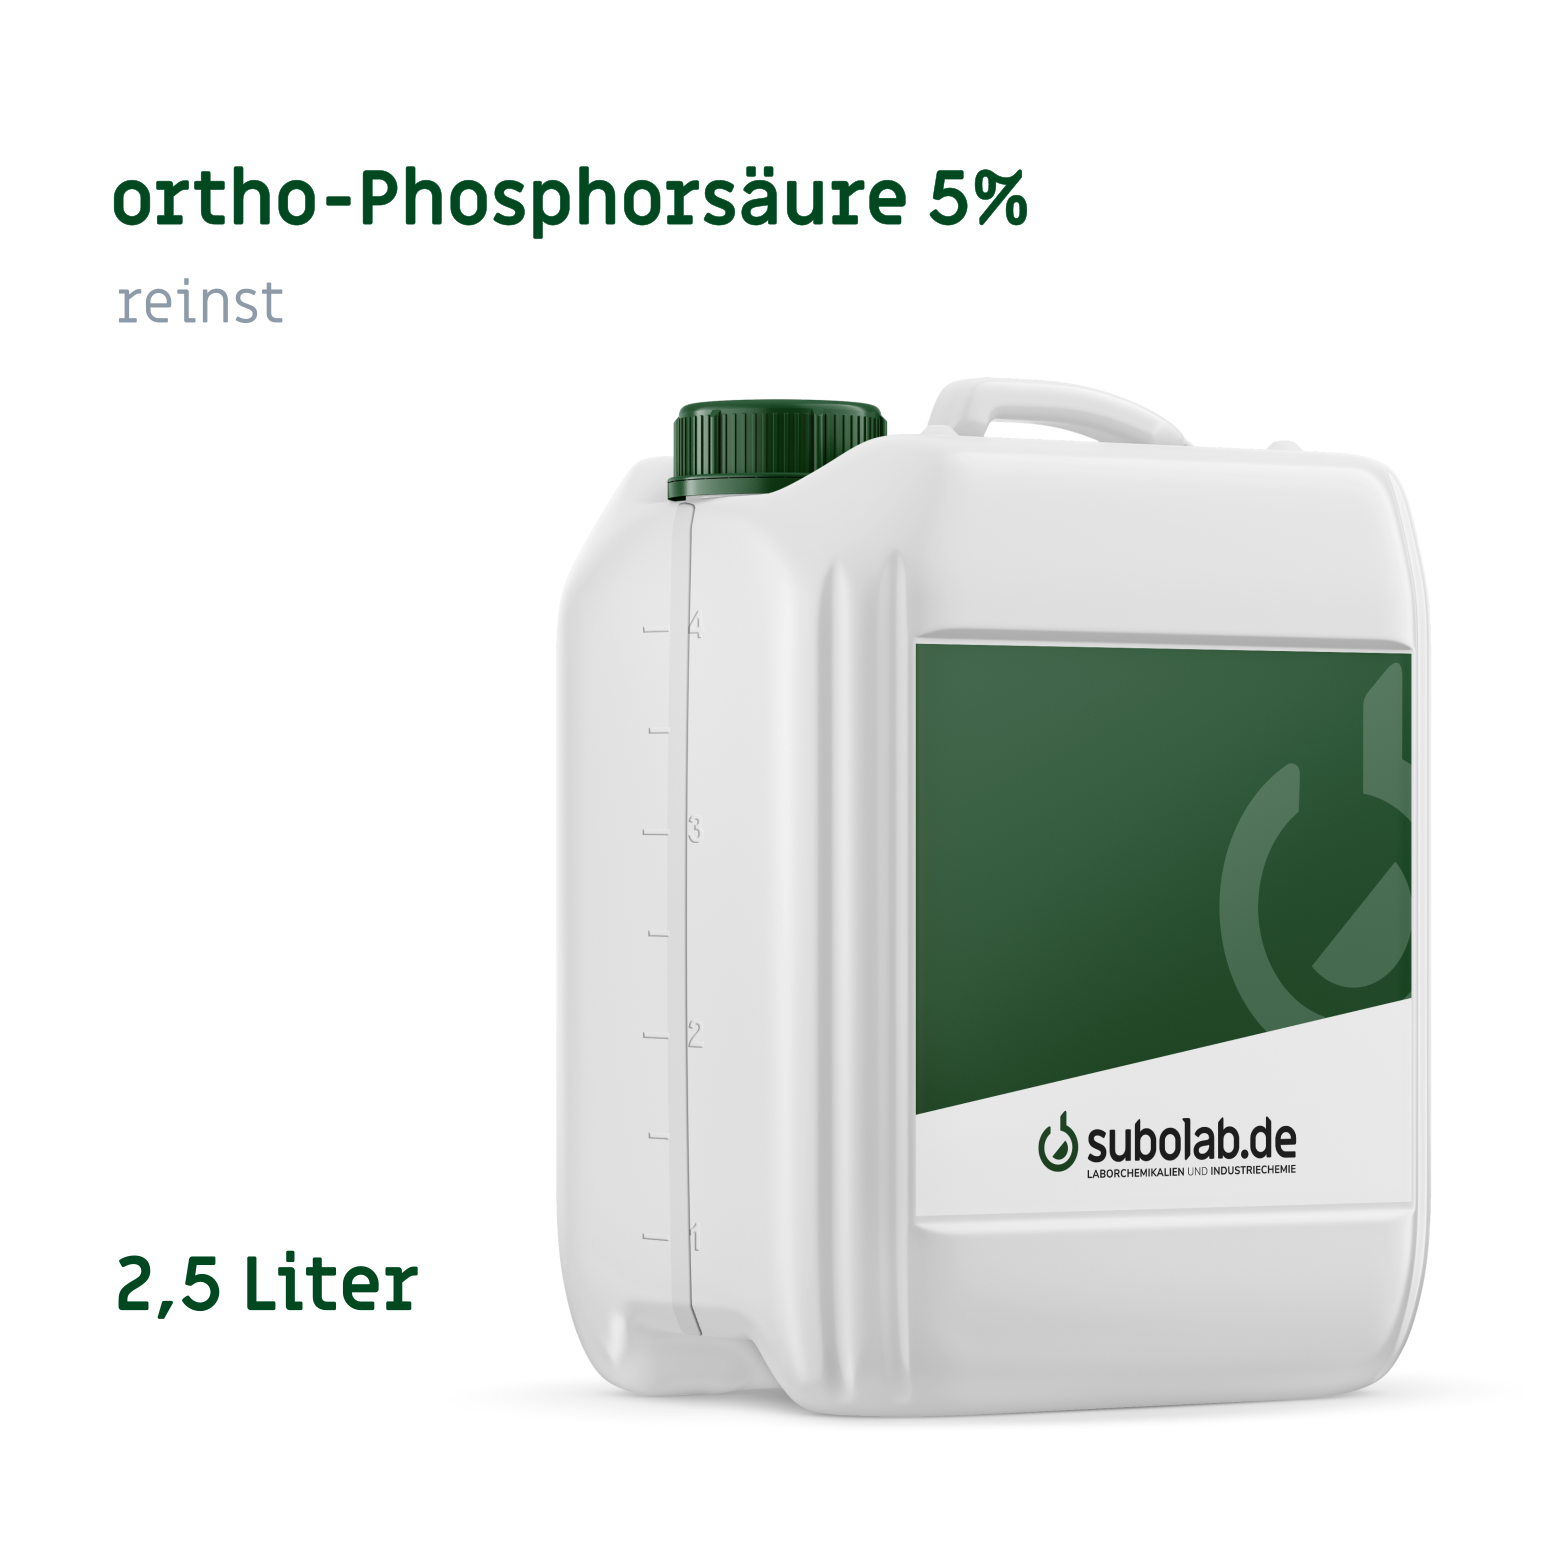 Bild von ortho-Phosphorsäure 5% reinst (2,5 Liter)